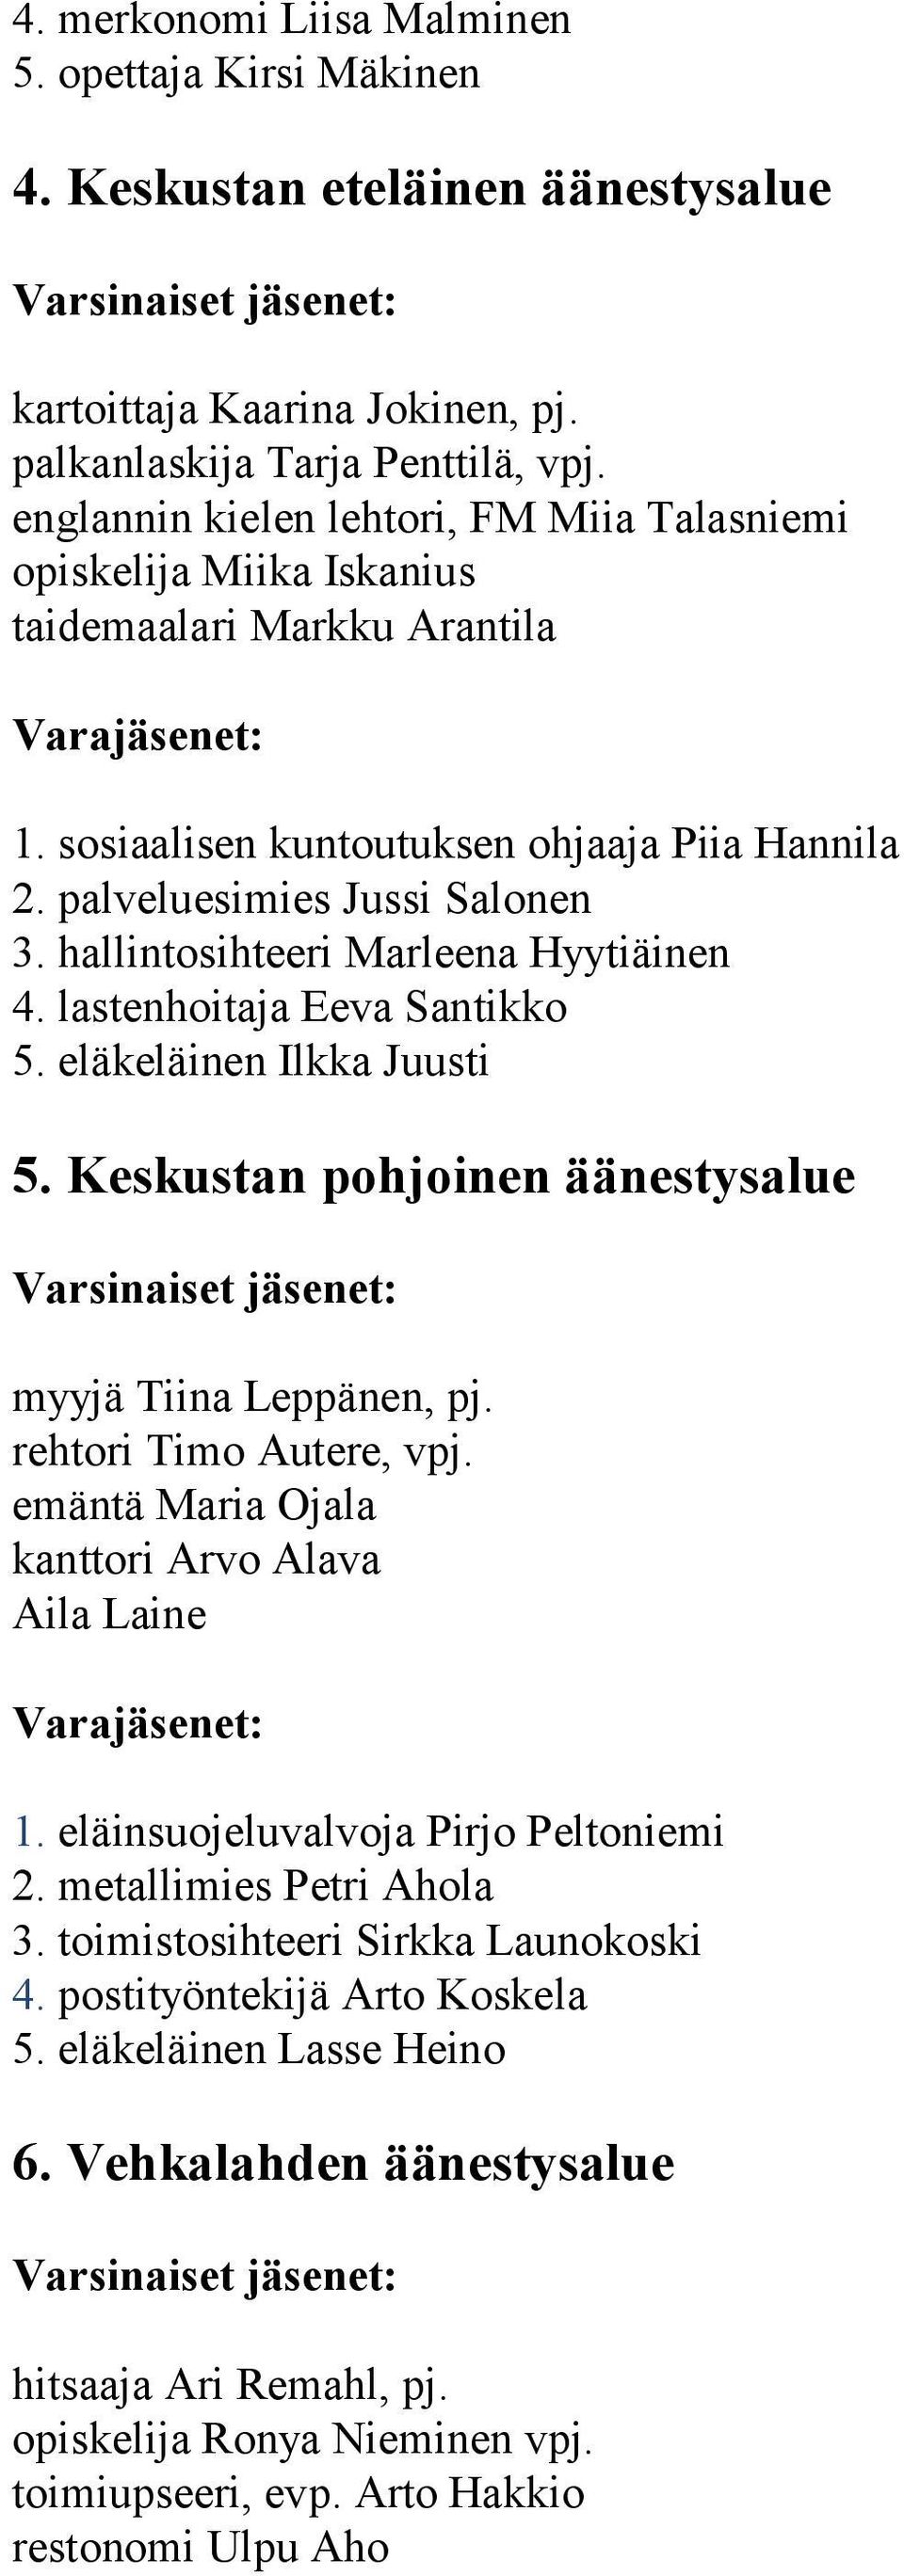 hallintosihteeri Marleena Hyytiäinen 4. lastenhoitaja Eeva Santikko 5. eläkeläinen Ilkka Juusti 5. Keskustan pohjoinen äänestysalue myyjä Tiina Leppänen, pj. rehtori Timo Autere, vpj.